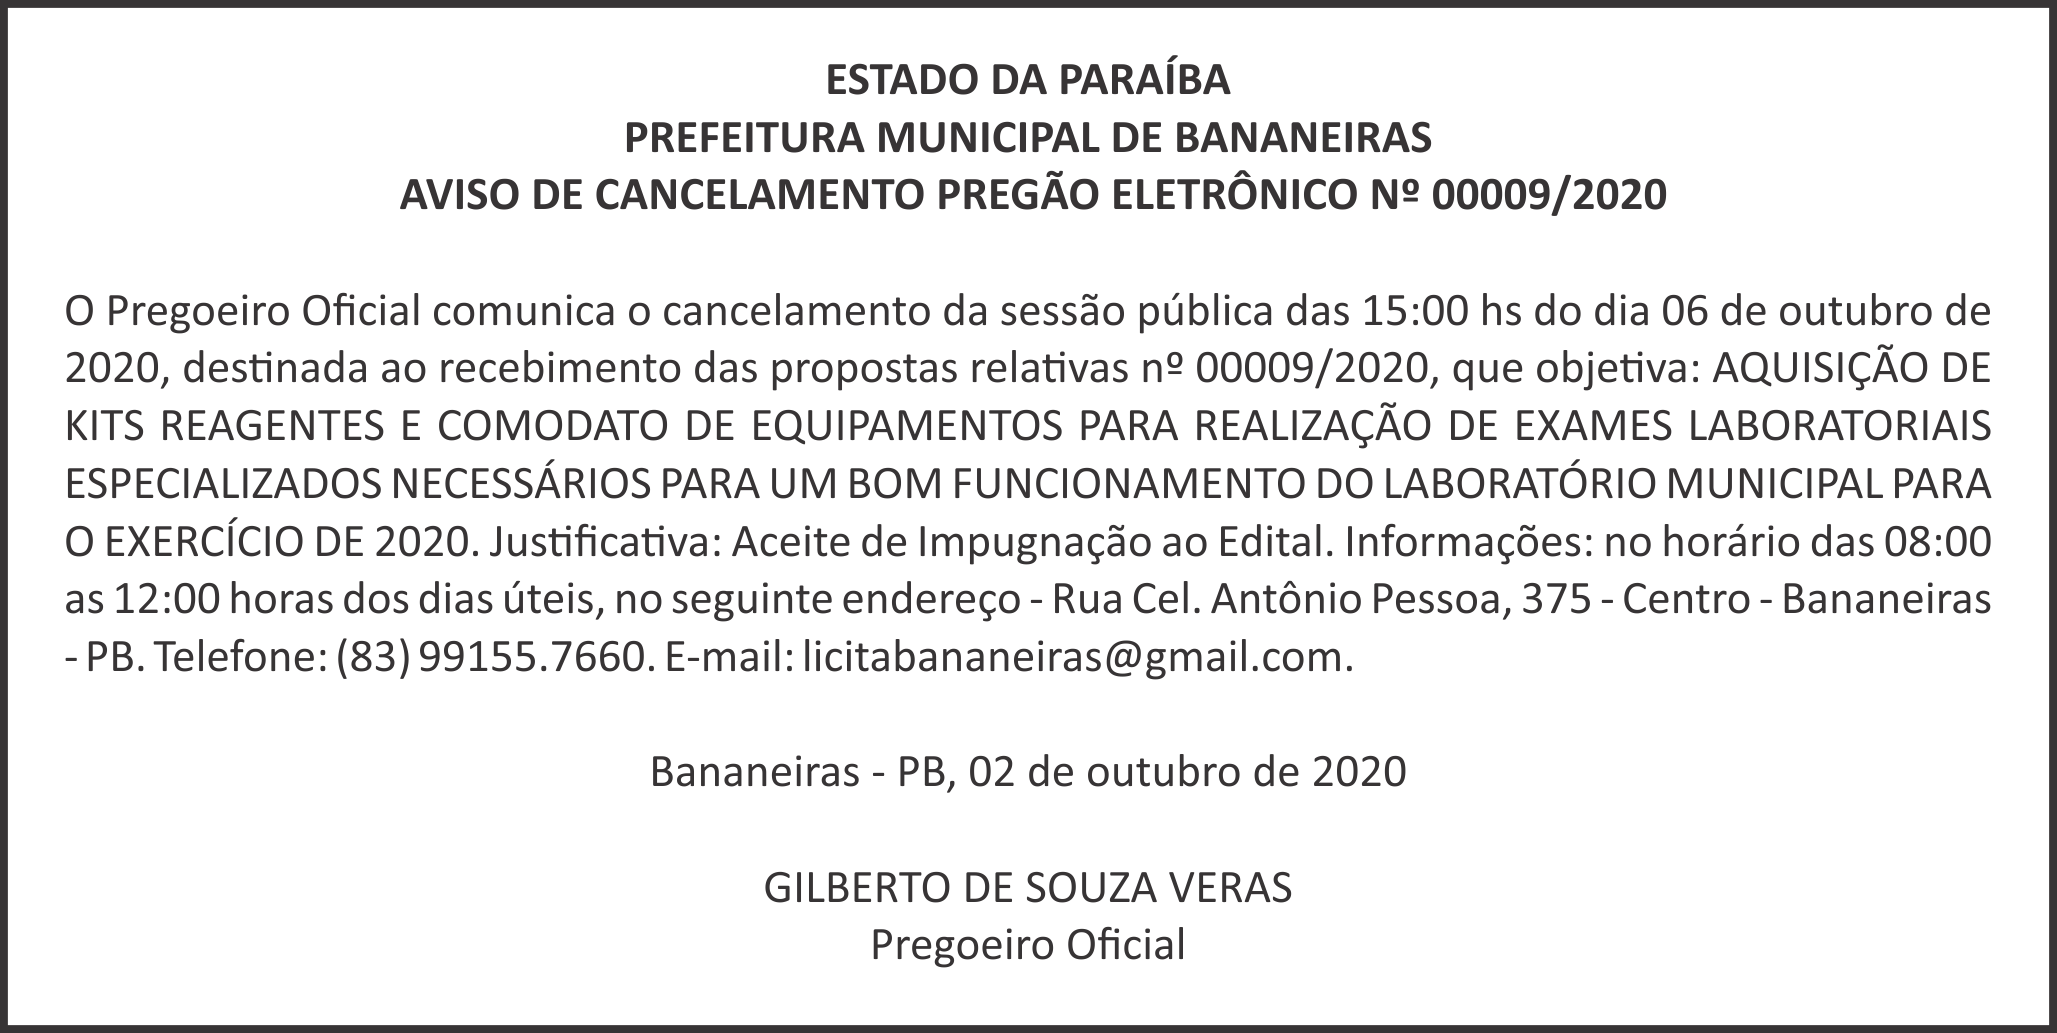 PREFEITURA MUNICIPAL DE BANANEIRAS – AVISO DE CANCELAMENTO – PREGÃO ELETRÔNICO Nº 00009/2020